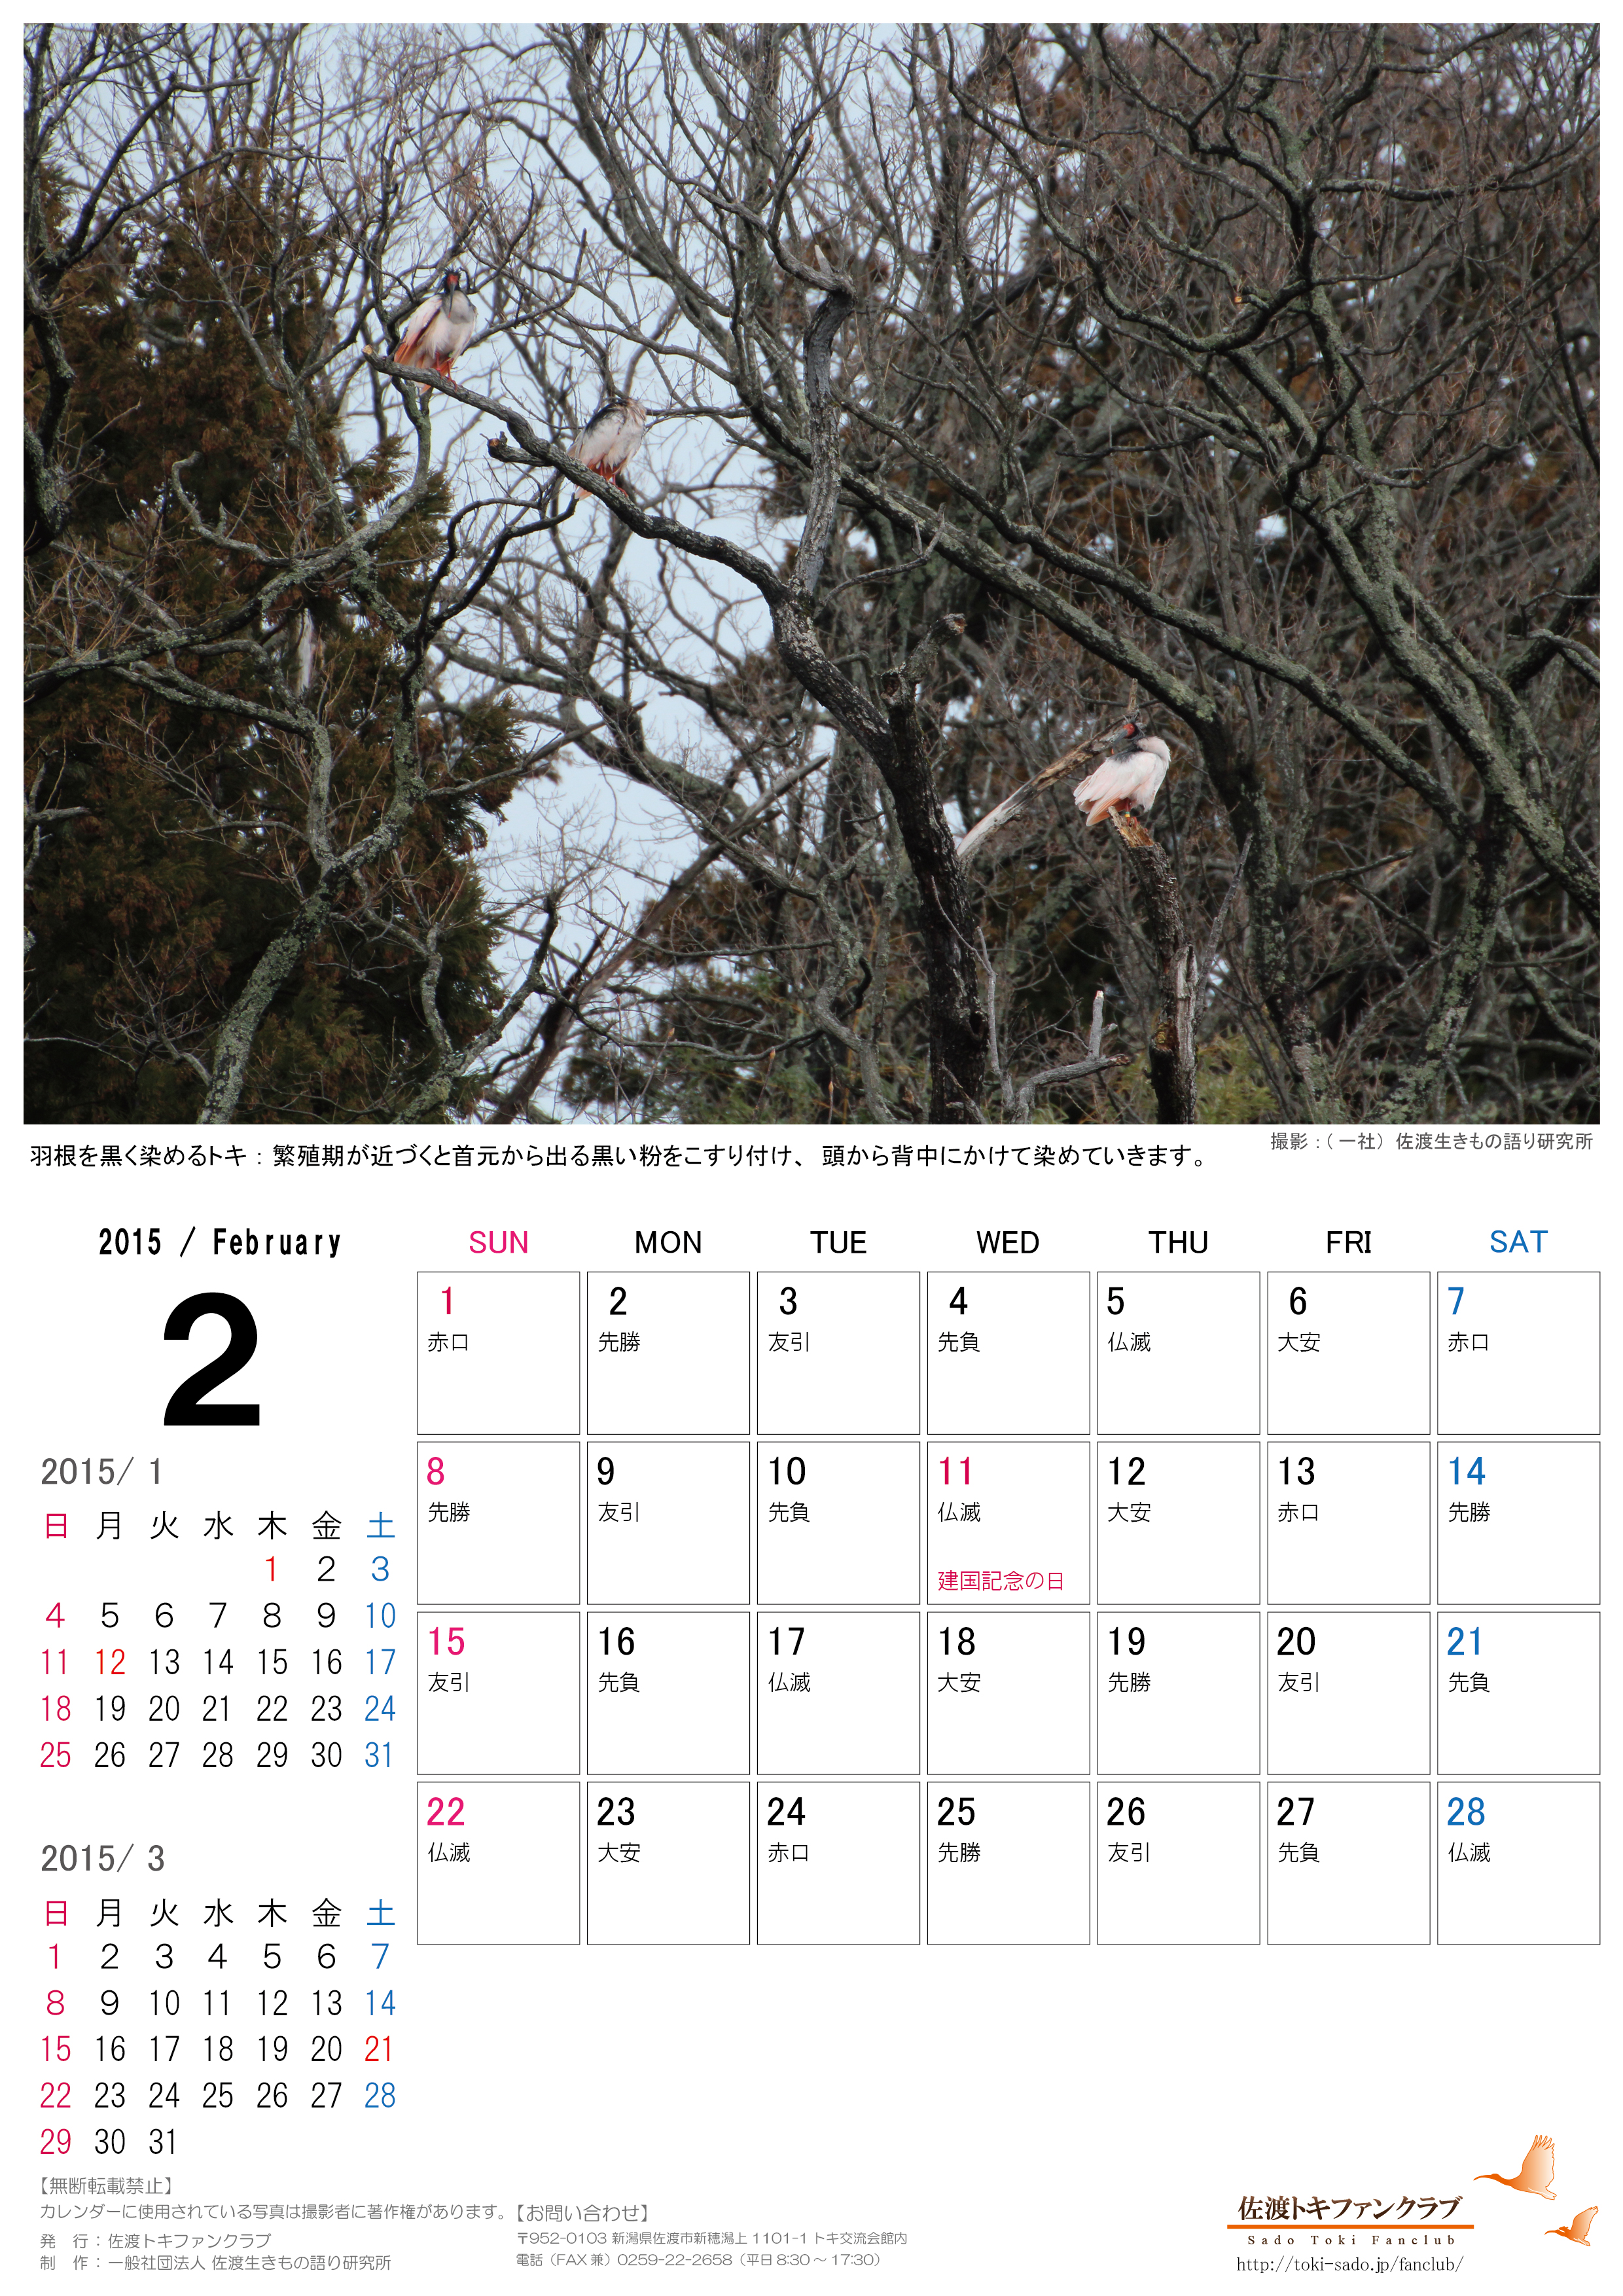 トキファンクラブ15年１月 2月カレンダー無料配信のお知らせ 佐渡トキファンクラブ